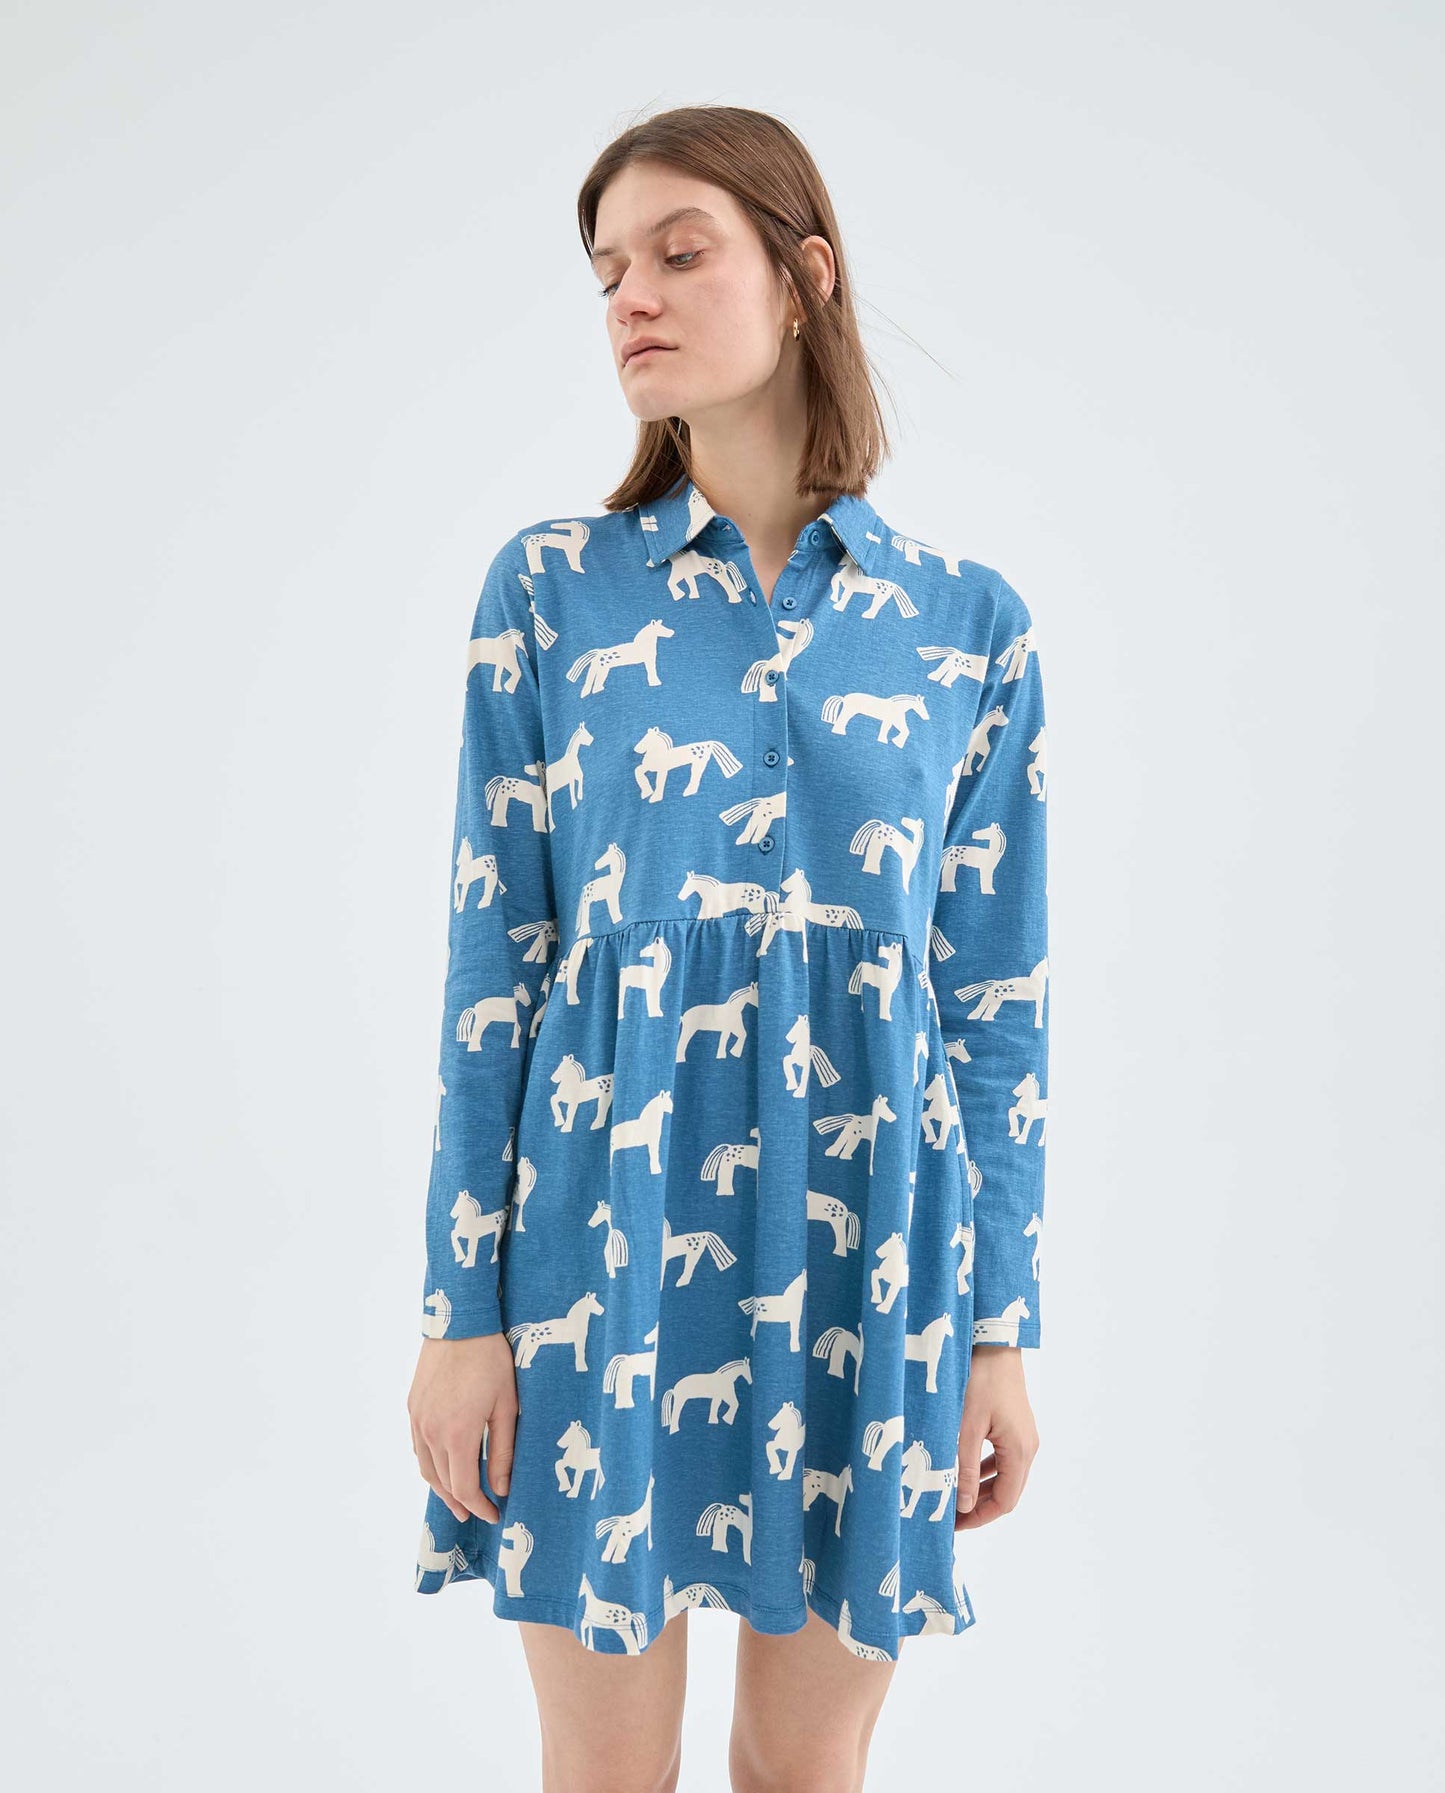 Compañia Fantastica - Jersey Shirt Horse Print Dress